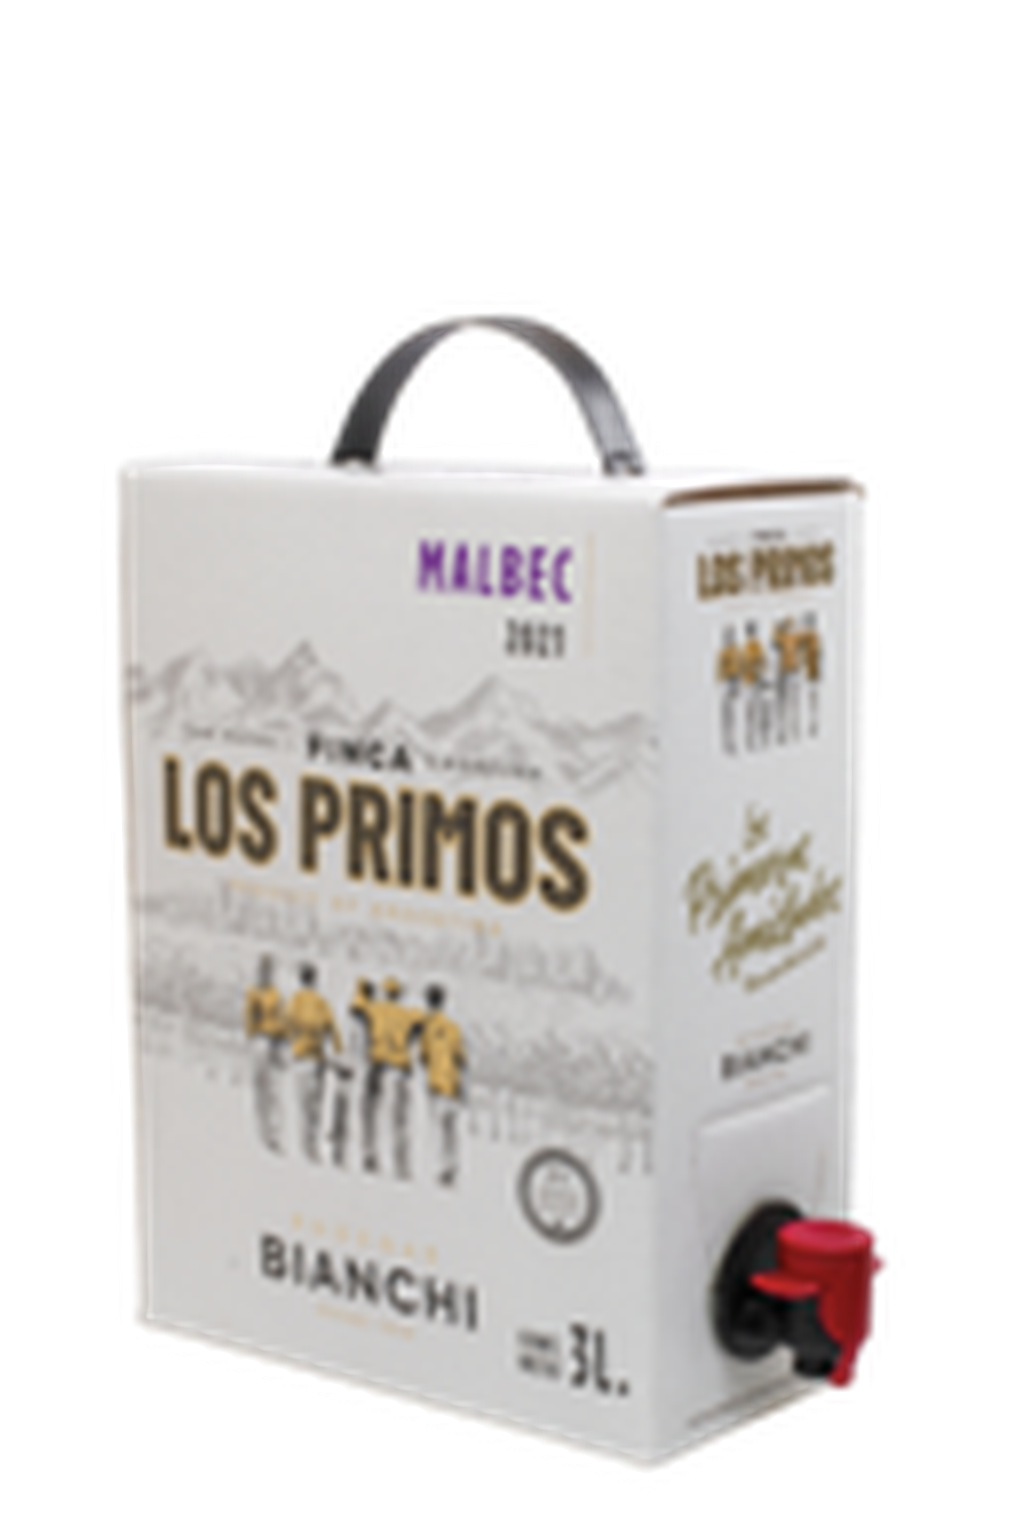 Los Primos bag in box.